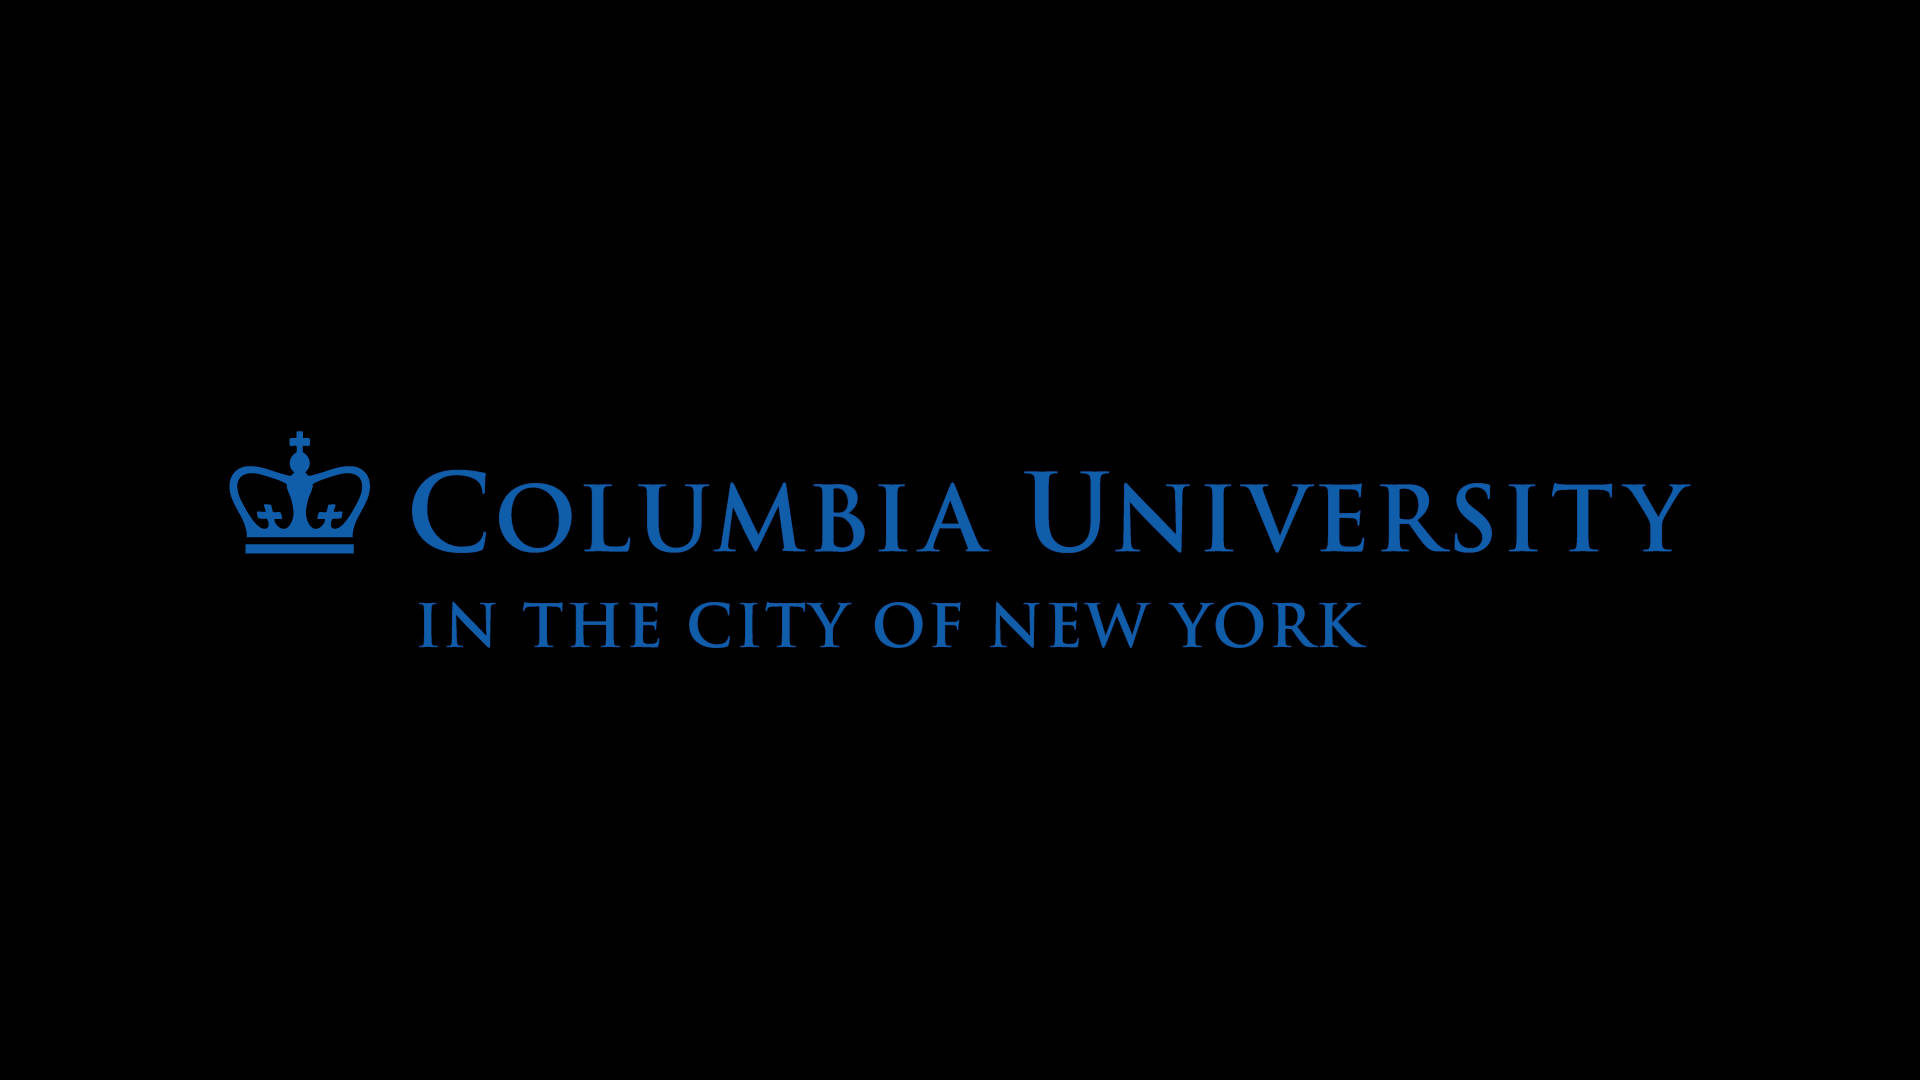 Columbiauniversity-logotypen Wallpaper